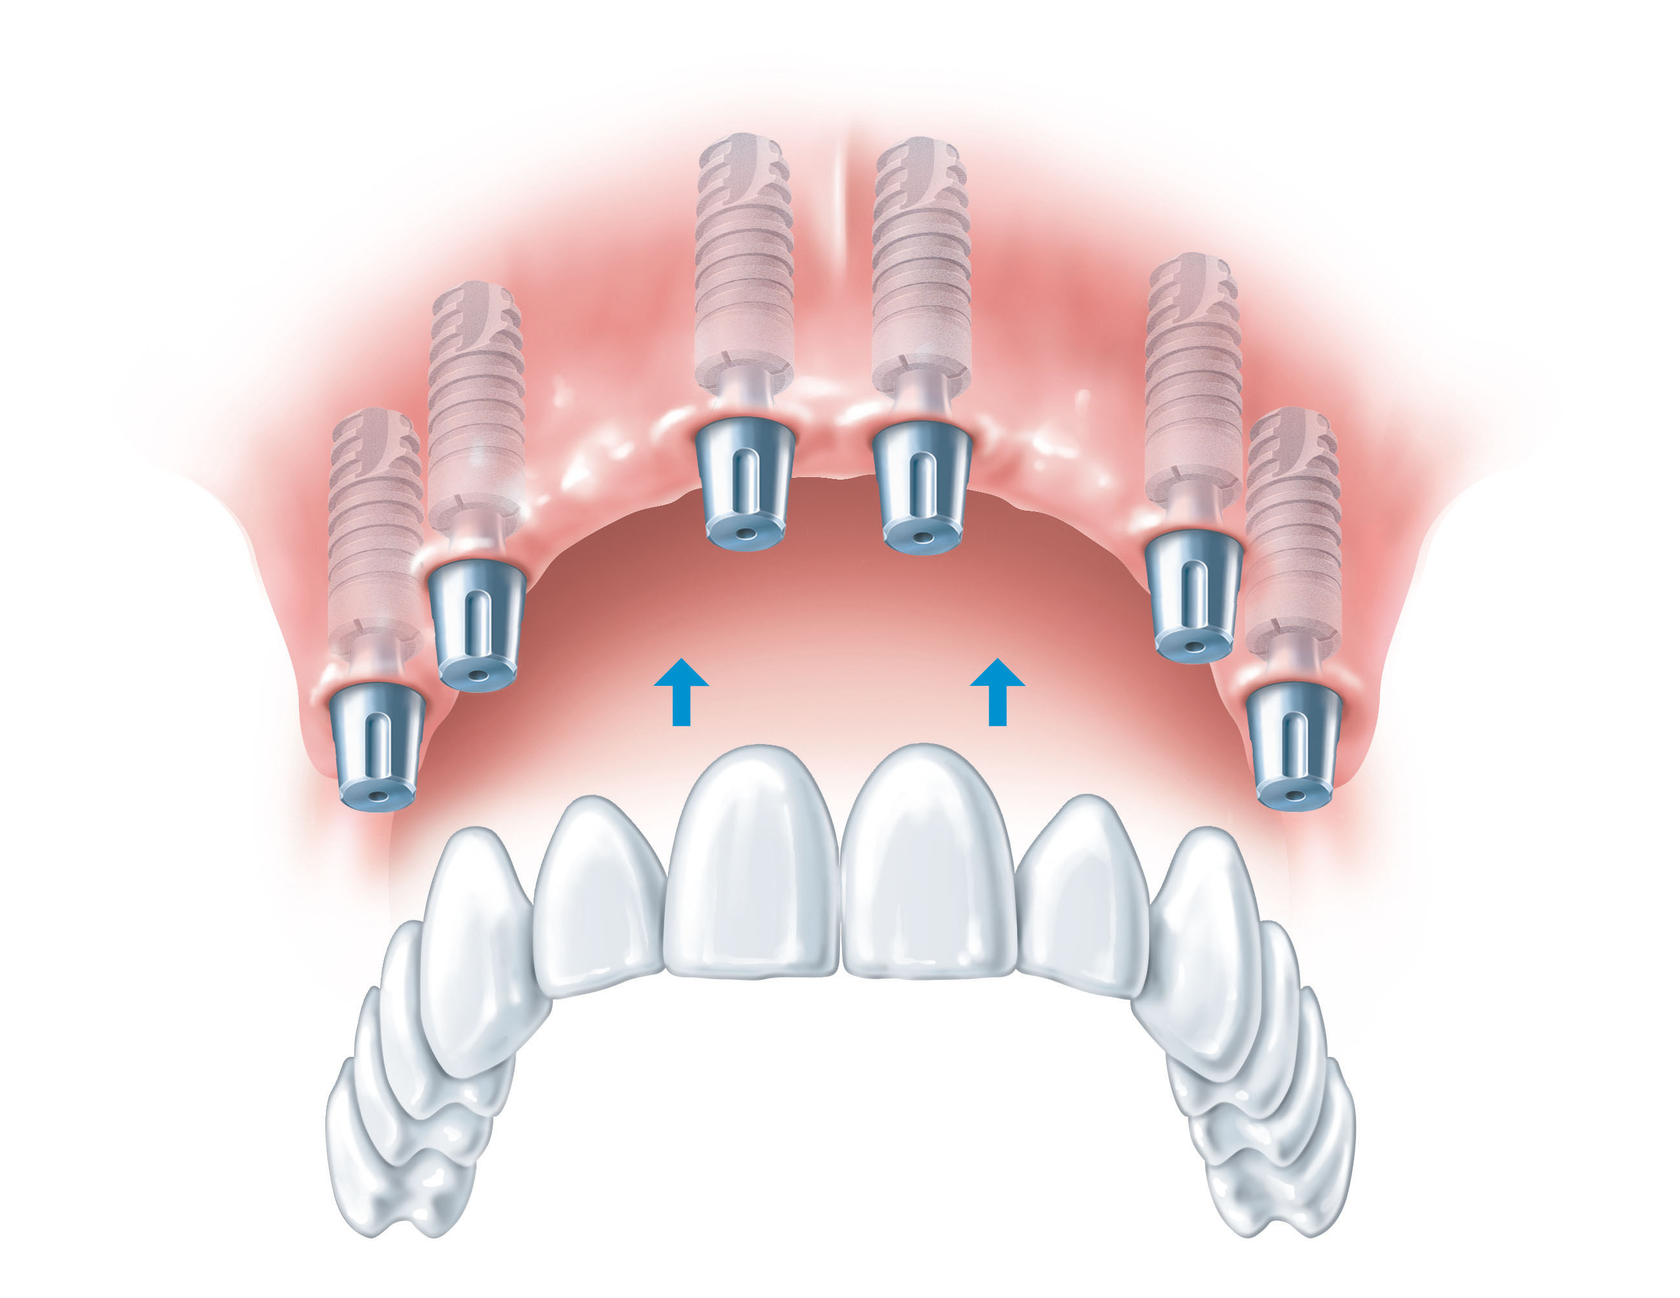 Имплантация зубов на 6 имплантах верхней челюсти. Несъемный протез на 6 имплантах. Протез на 6 имплантах на верхнюю челюсть. Имплантация верхней челюсти на 6 имплантах схема. Имплантация зубов all on 6